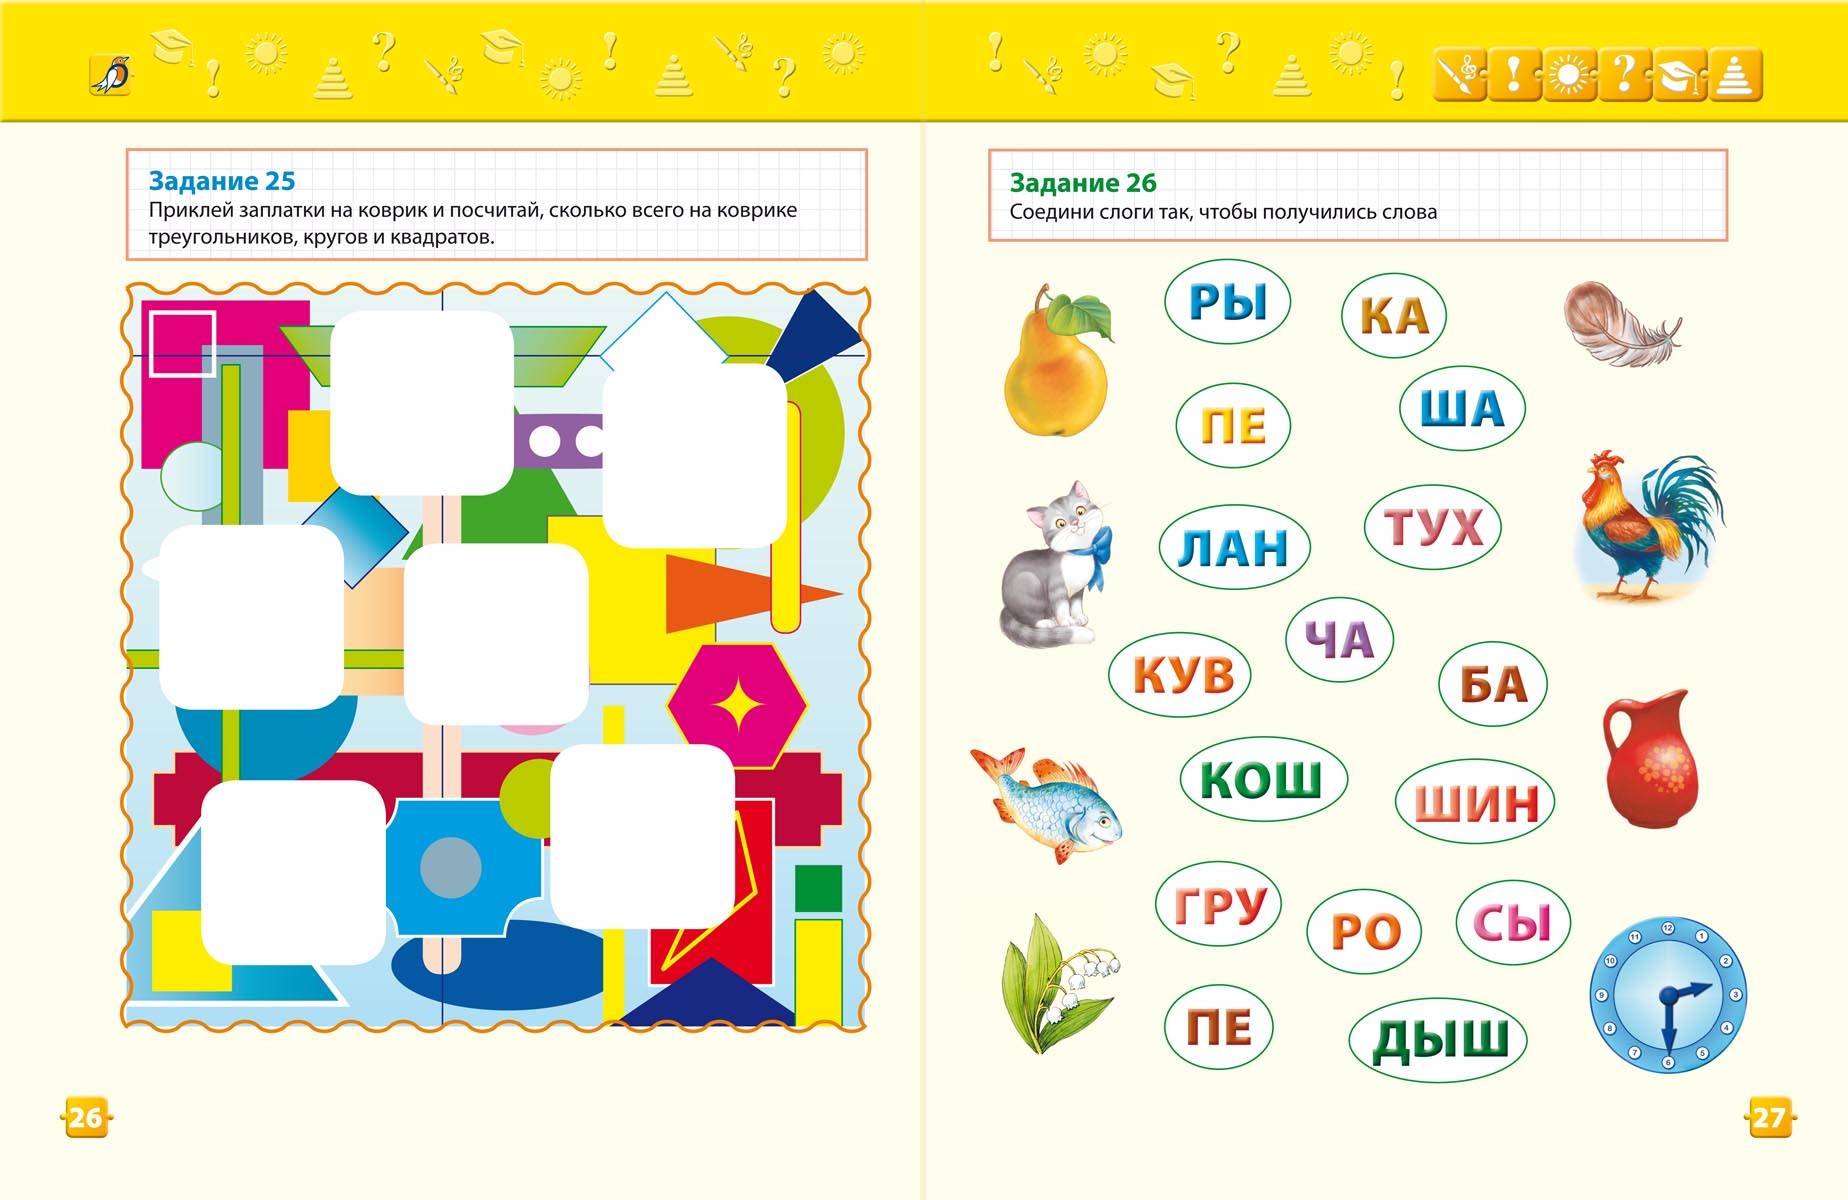 15 развивающих приложений для детей разных возрастов: поиграть и научиться| ichip.ru